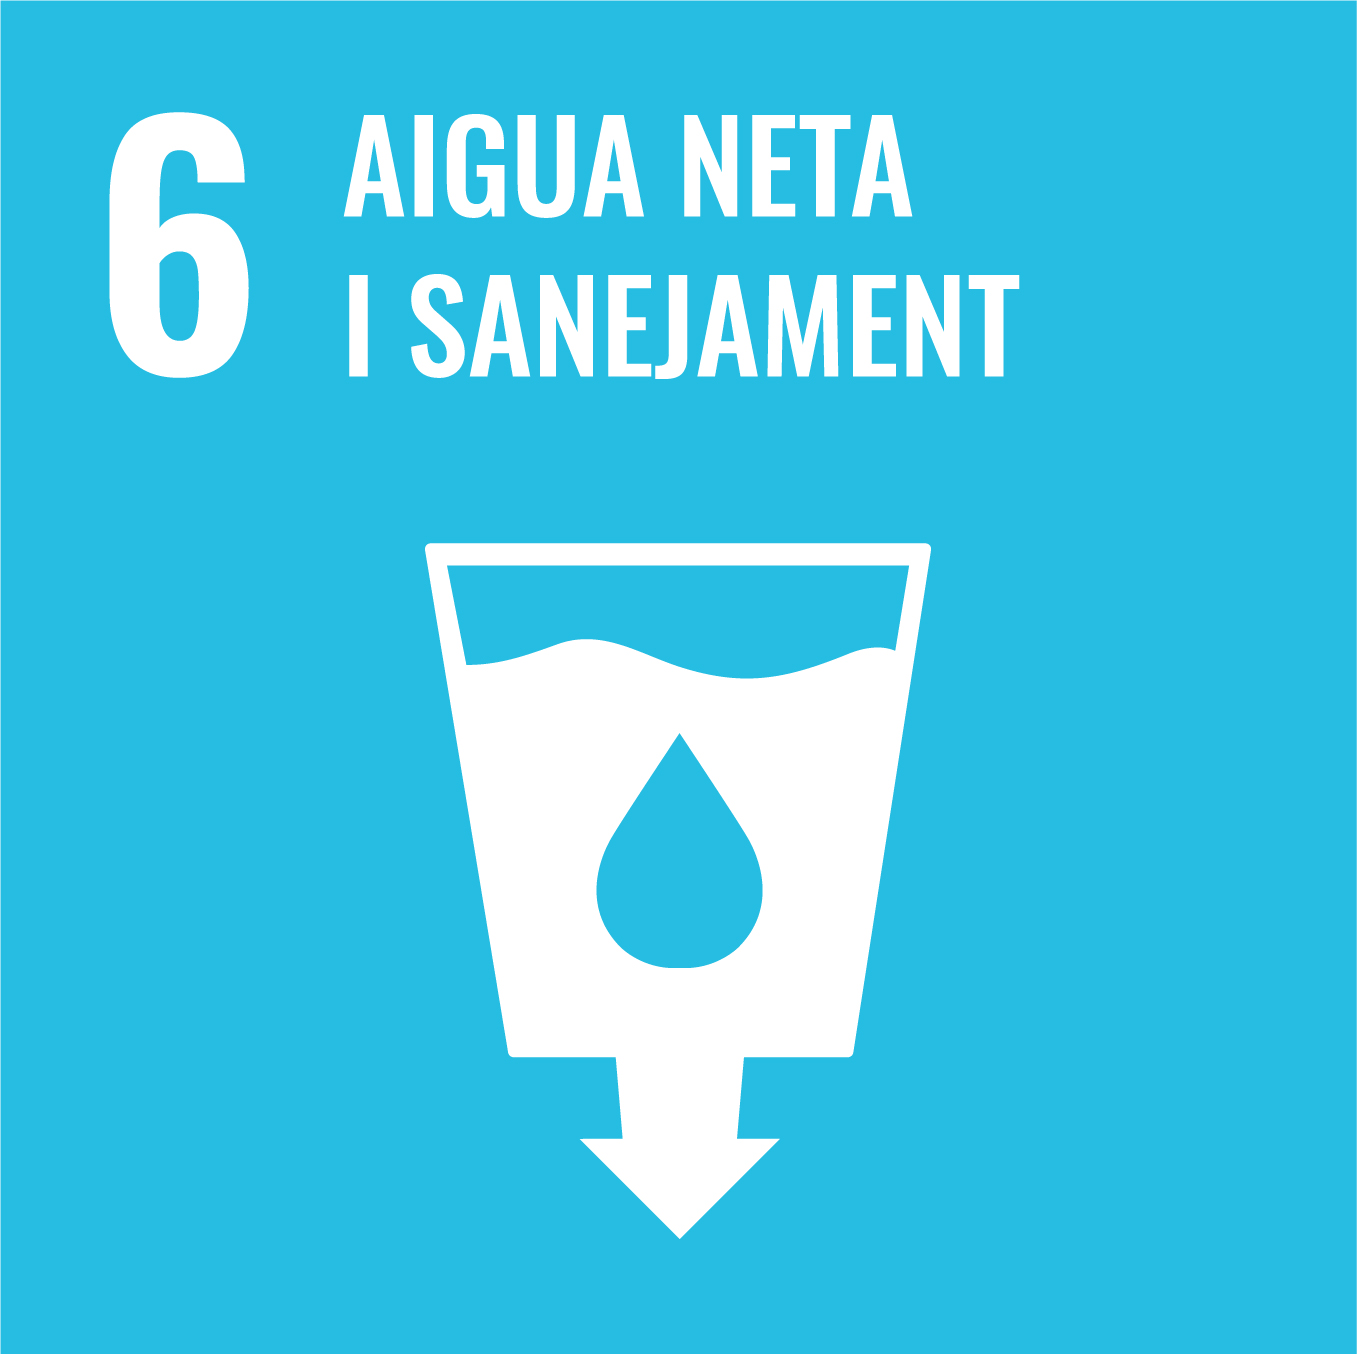 Garantir la disponibilitat i una gestió sostenible de l’aigua i el sanejament per a totes les persones